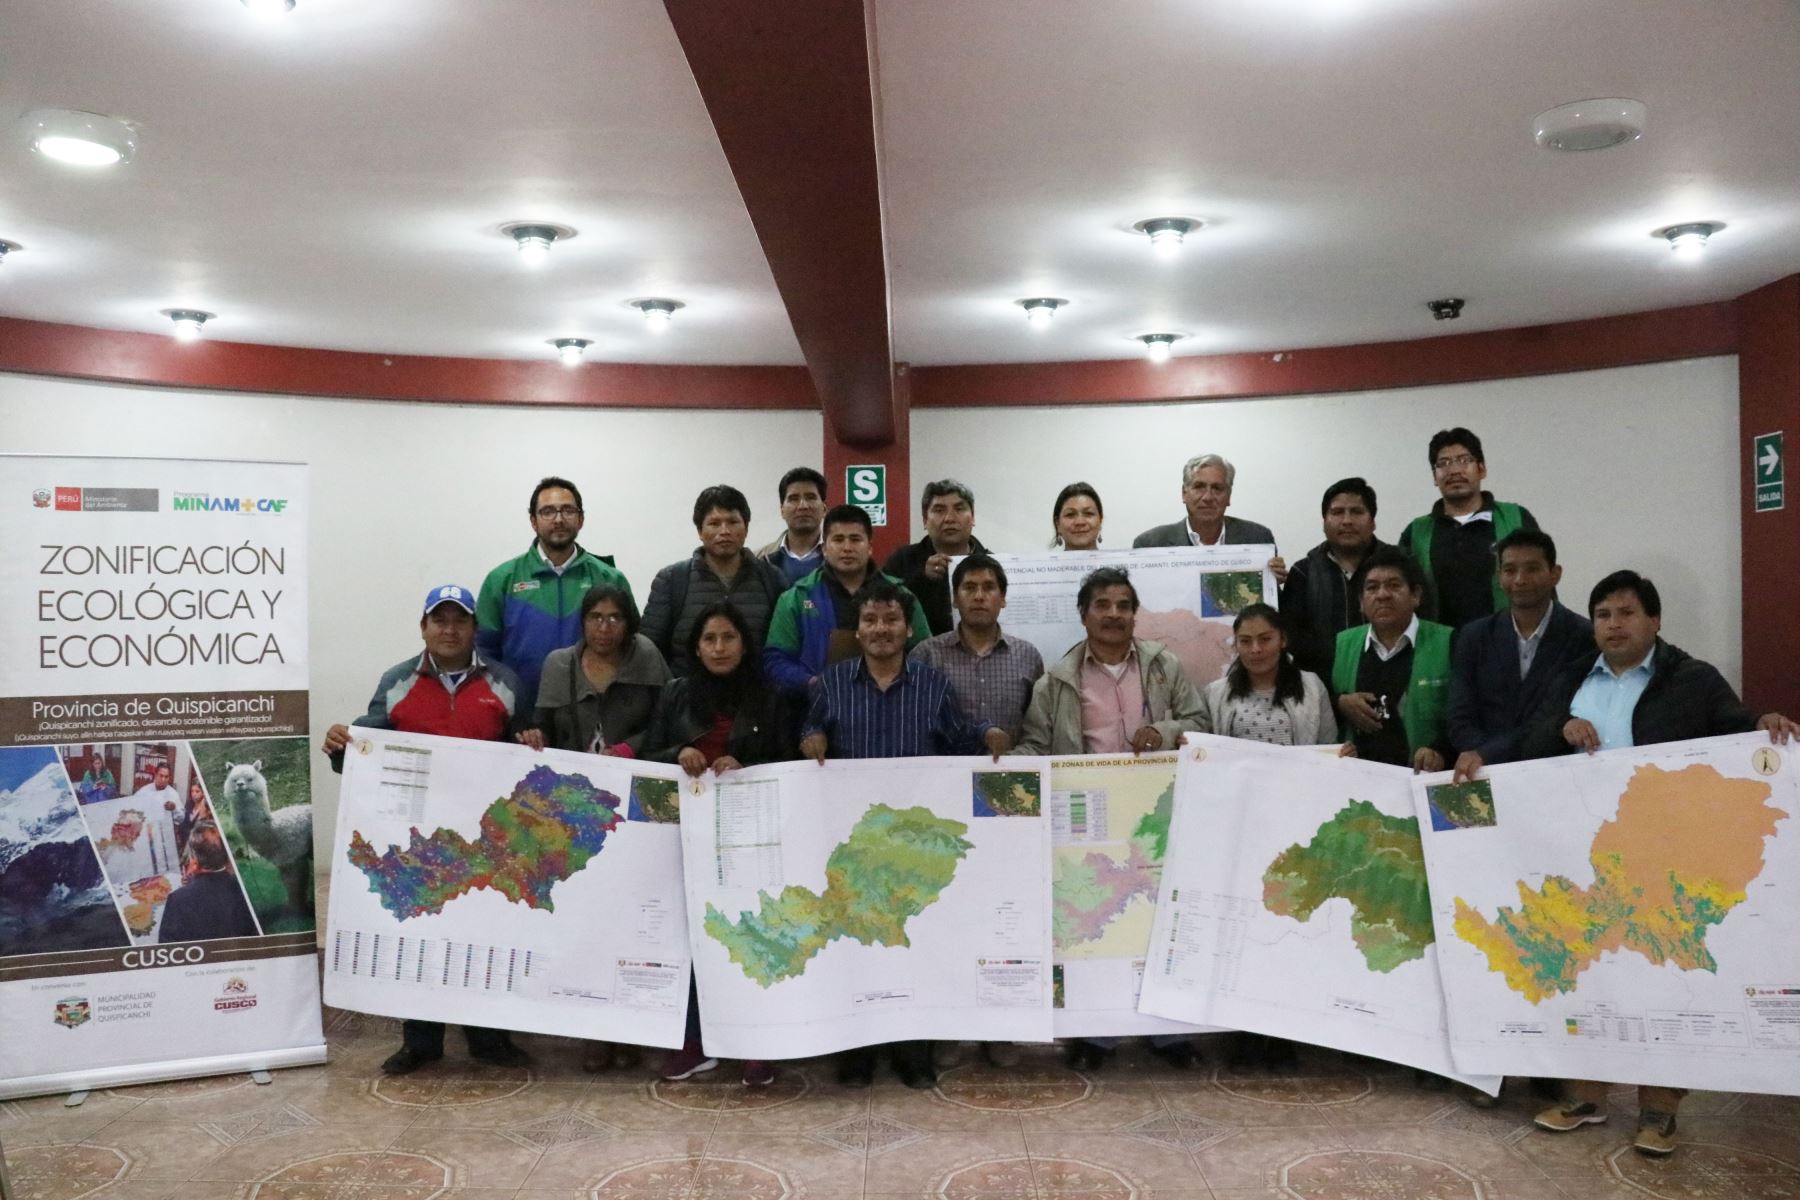 Validan zonificación ecológica y económica de la provincia de Quispanchi, en Cusco.